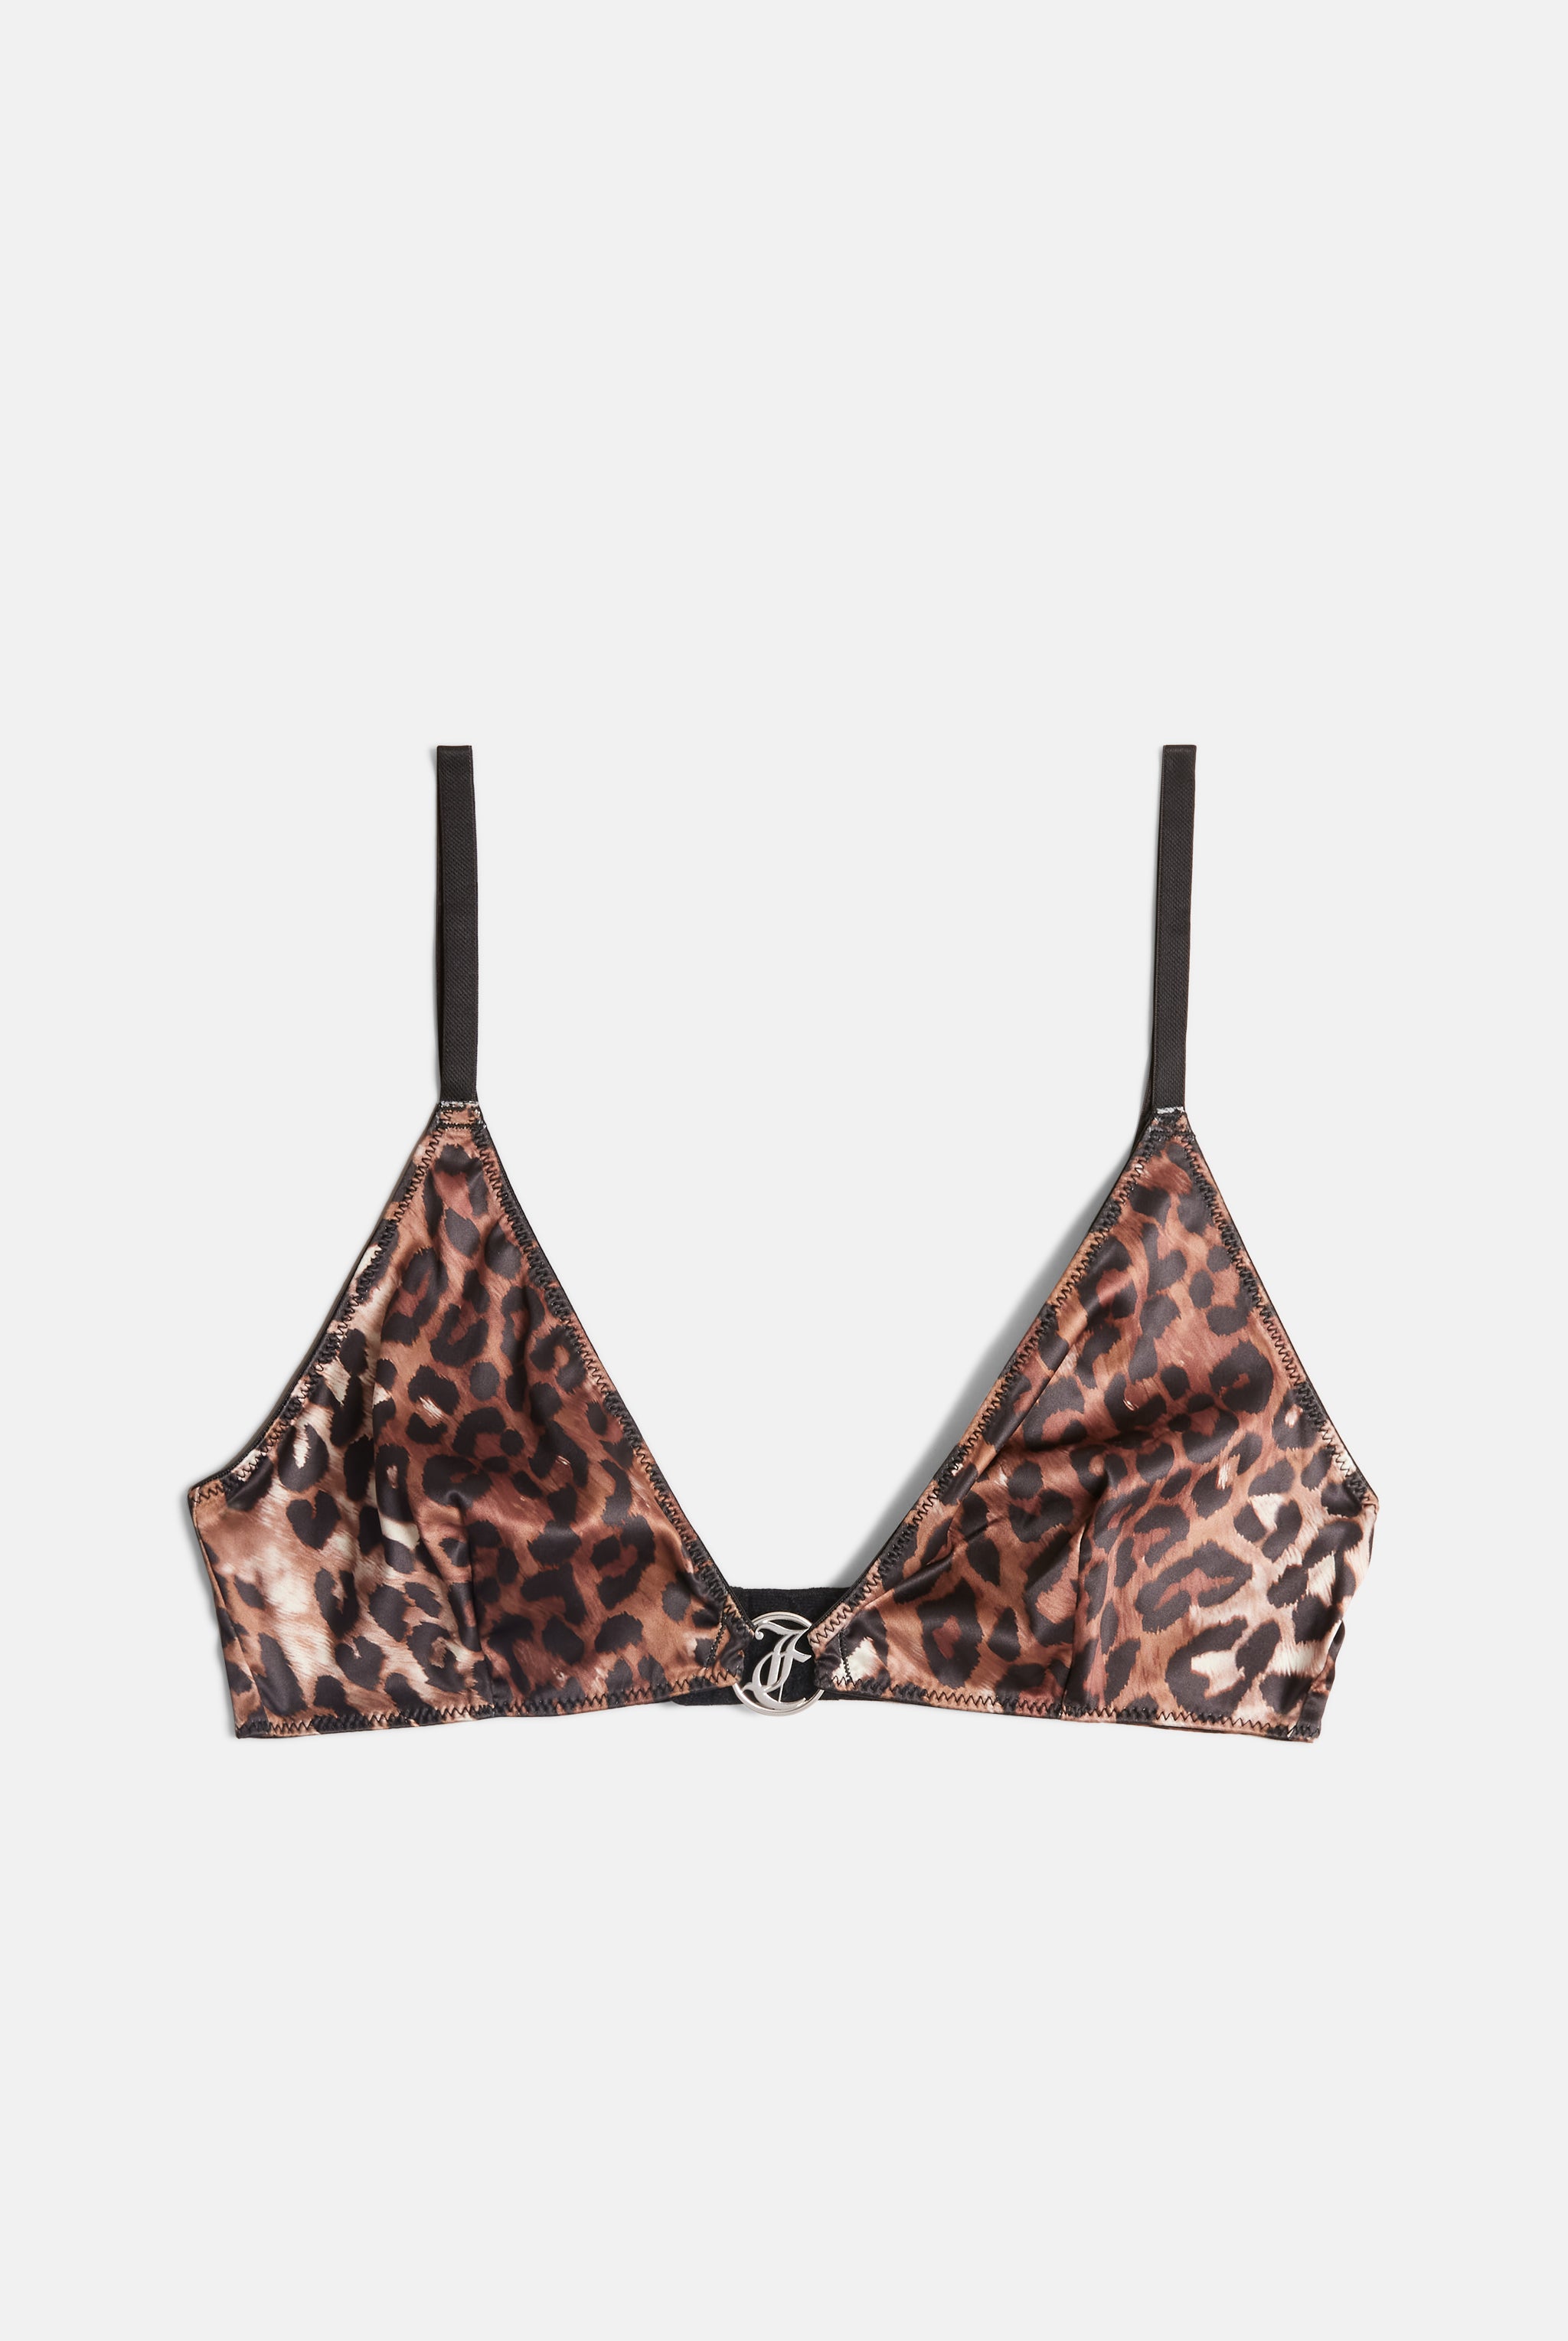 Juicy Couture Leopard Print Push Up Bra Women's Size 36D Tan